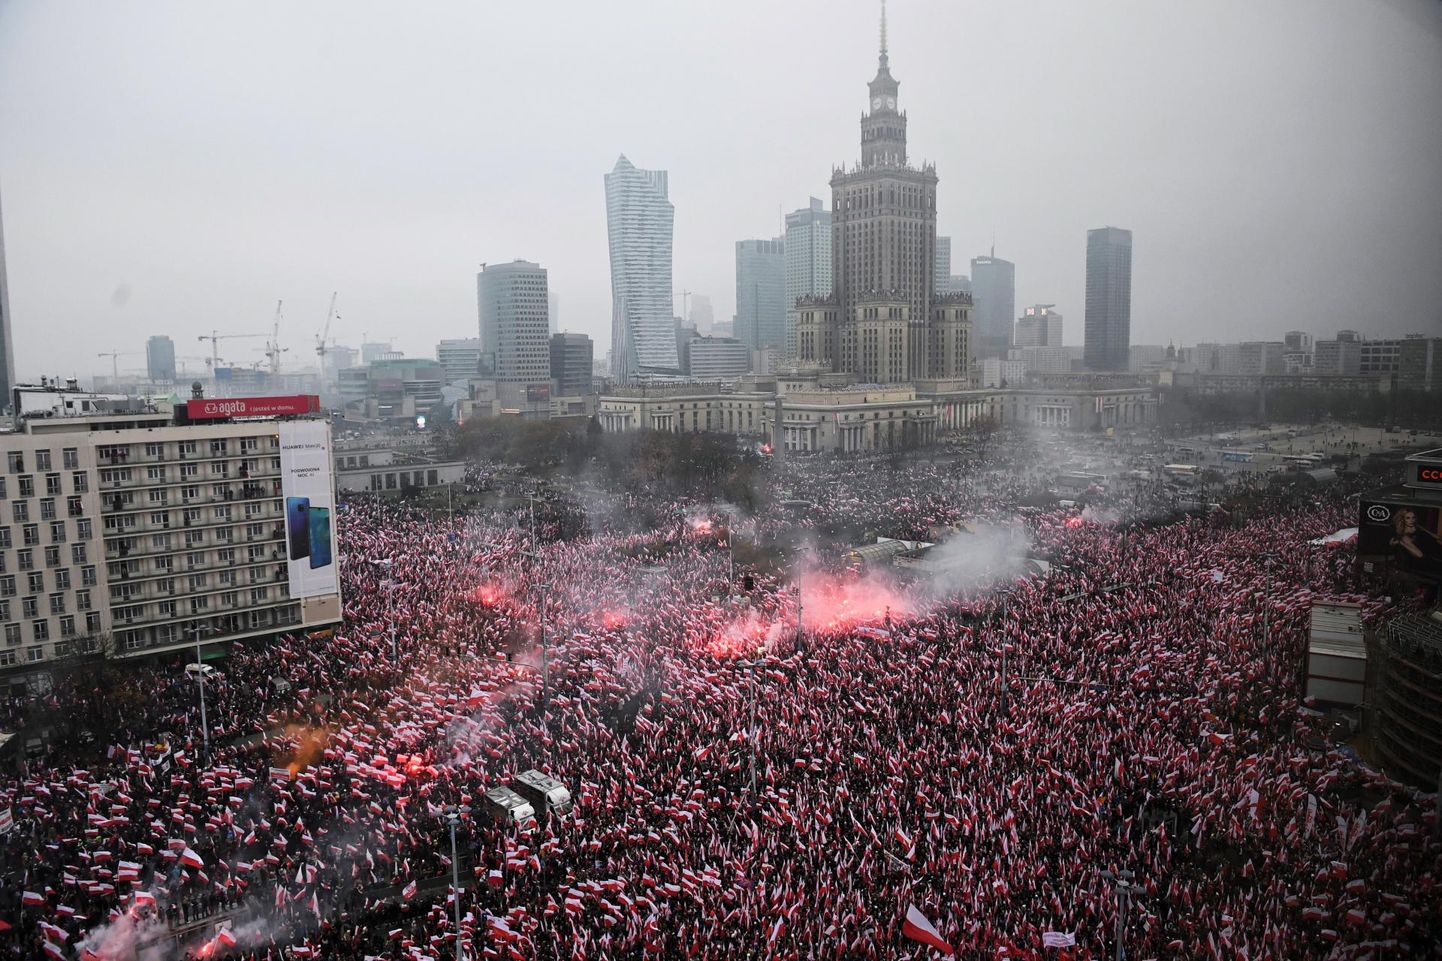 Poola iseseisvuse taastamise sajandal aastapäeval Varssavis korraldatud rongkäik.